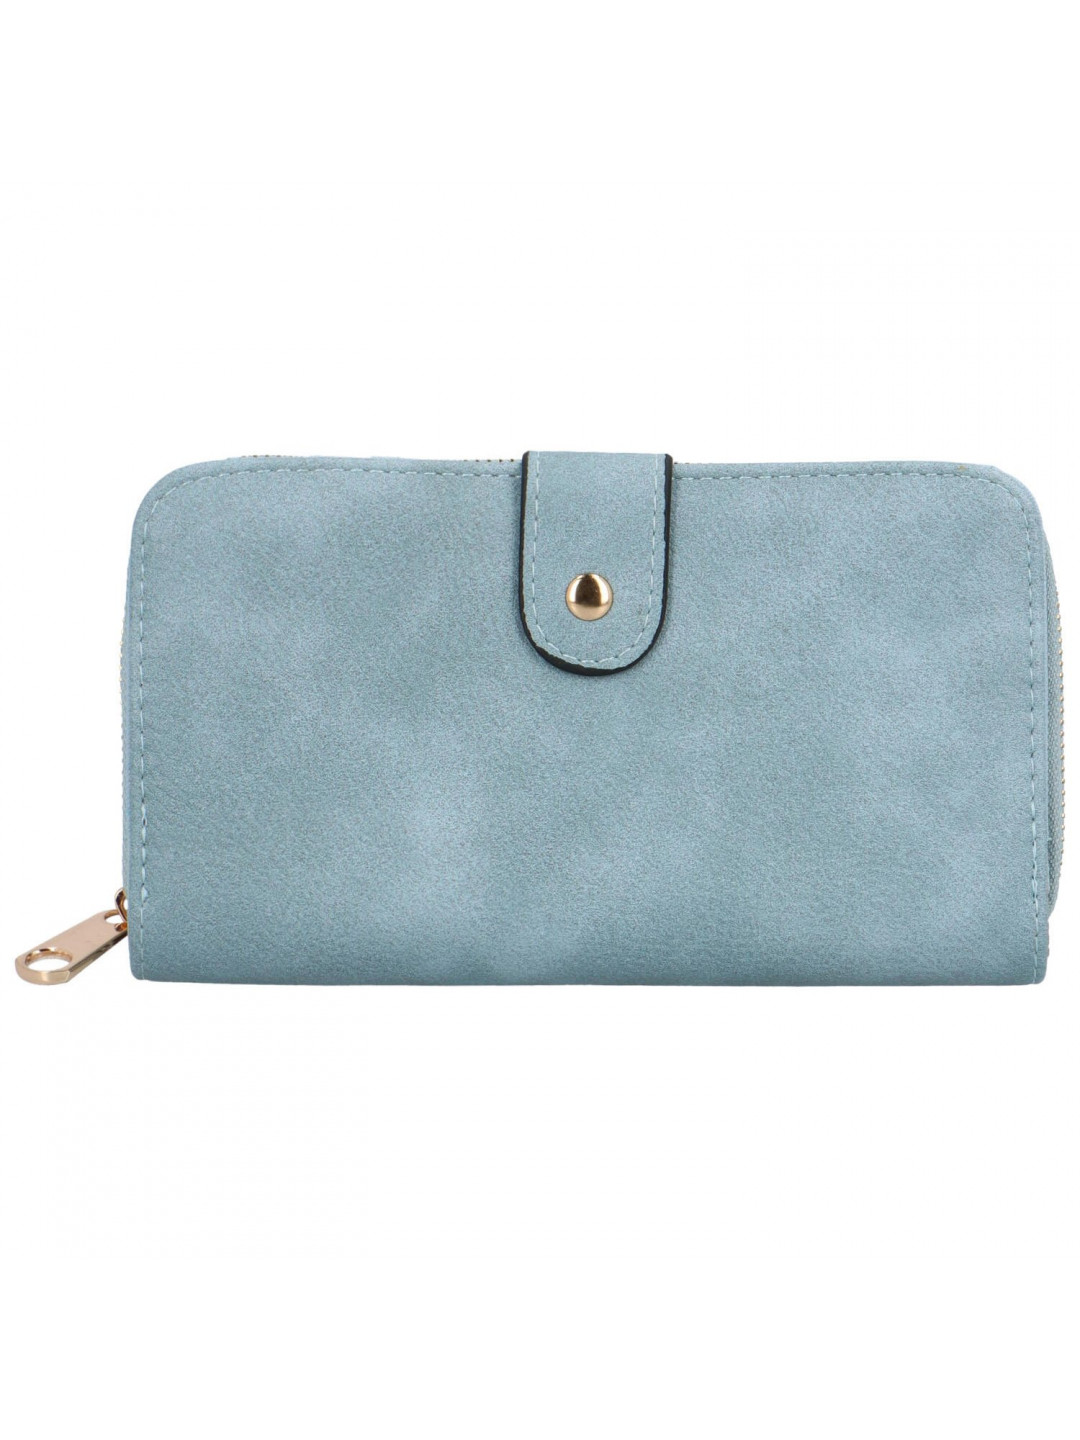 Trendy dámská koženková peněženka Bellina světle modrá